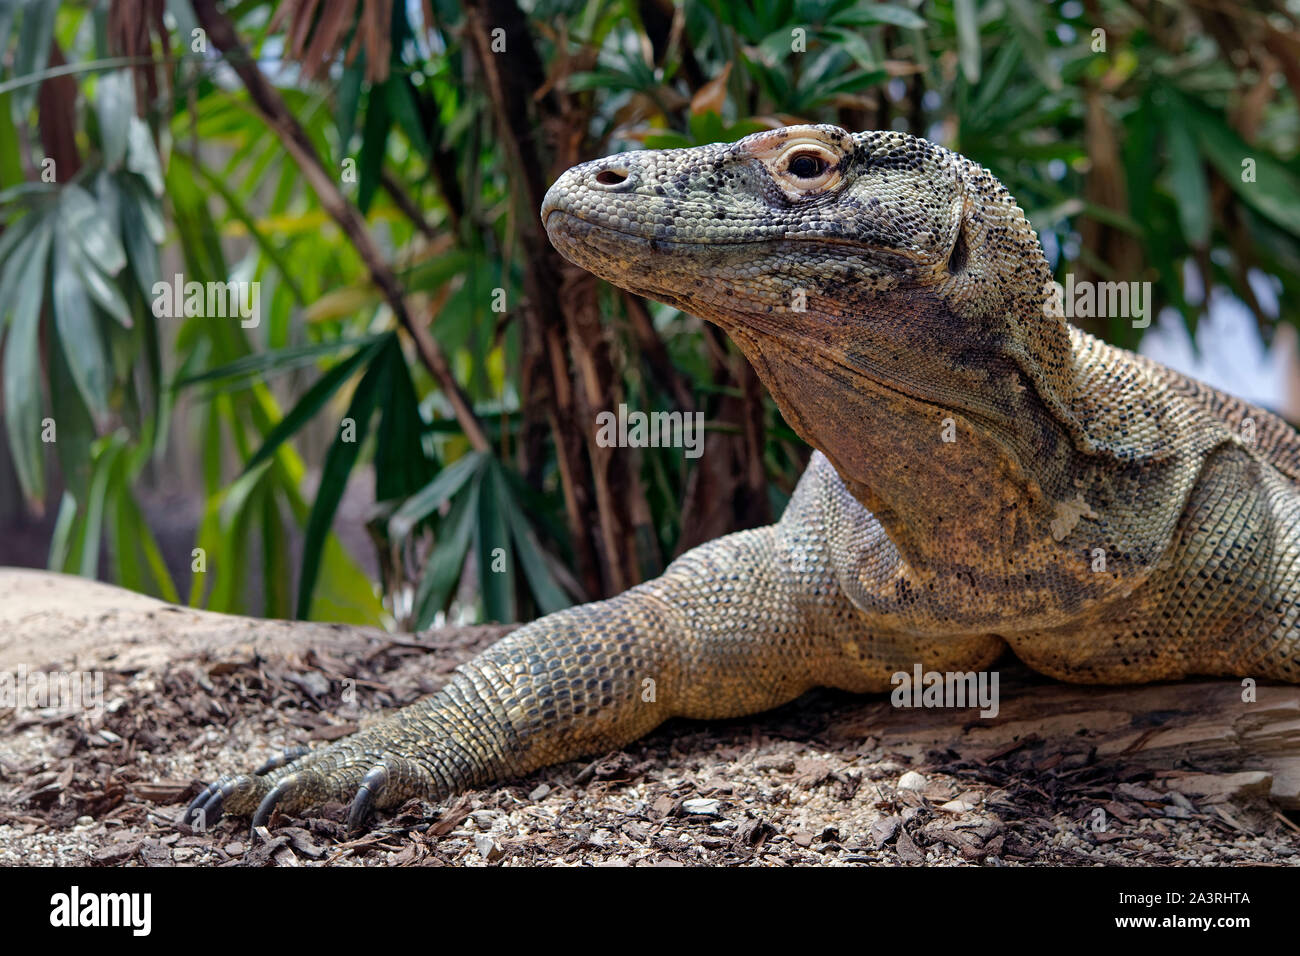 Komodo dragon - Varanus komodoensis Stock Photo